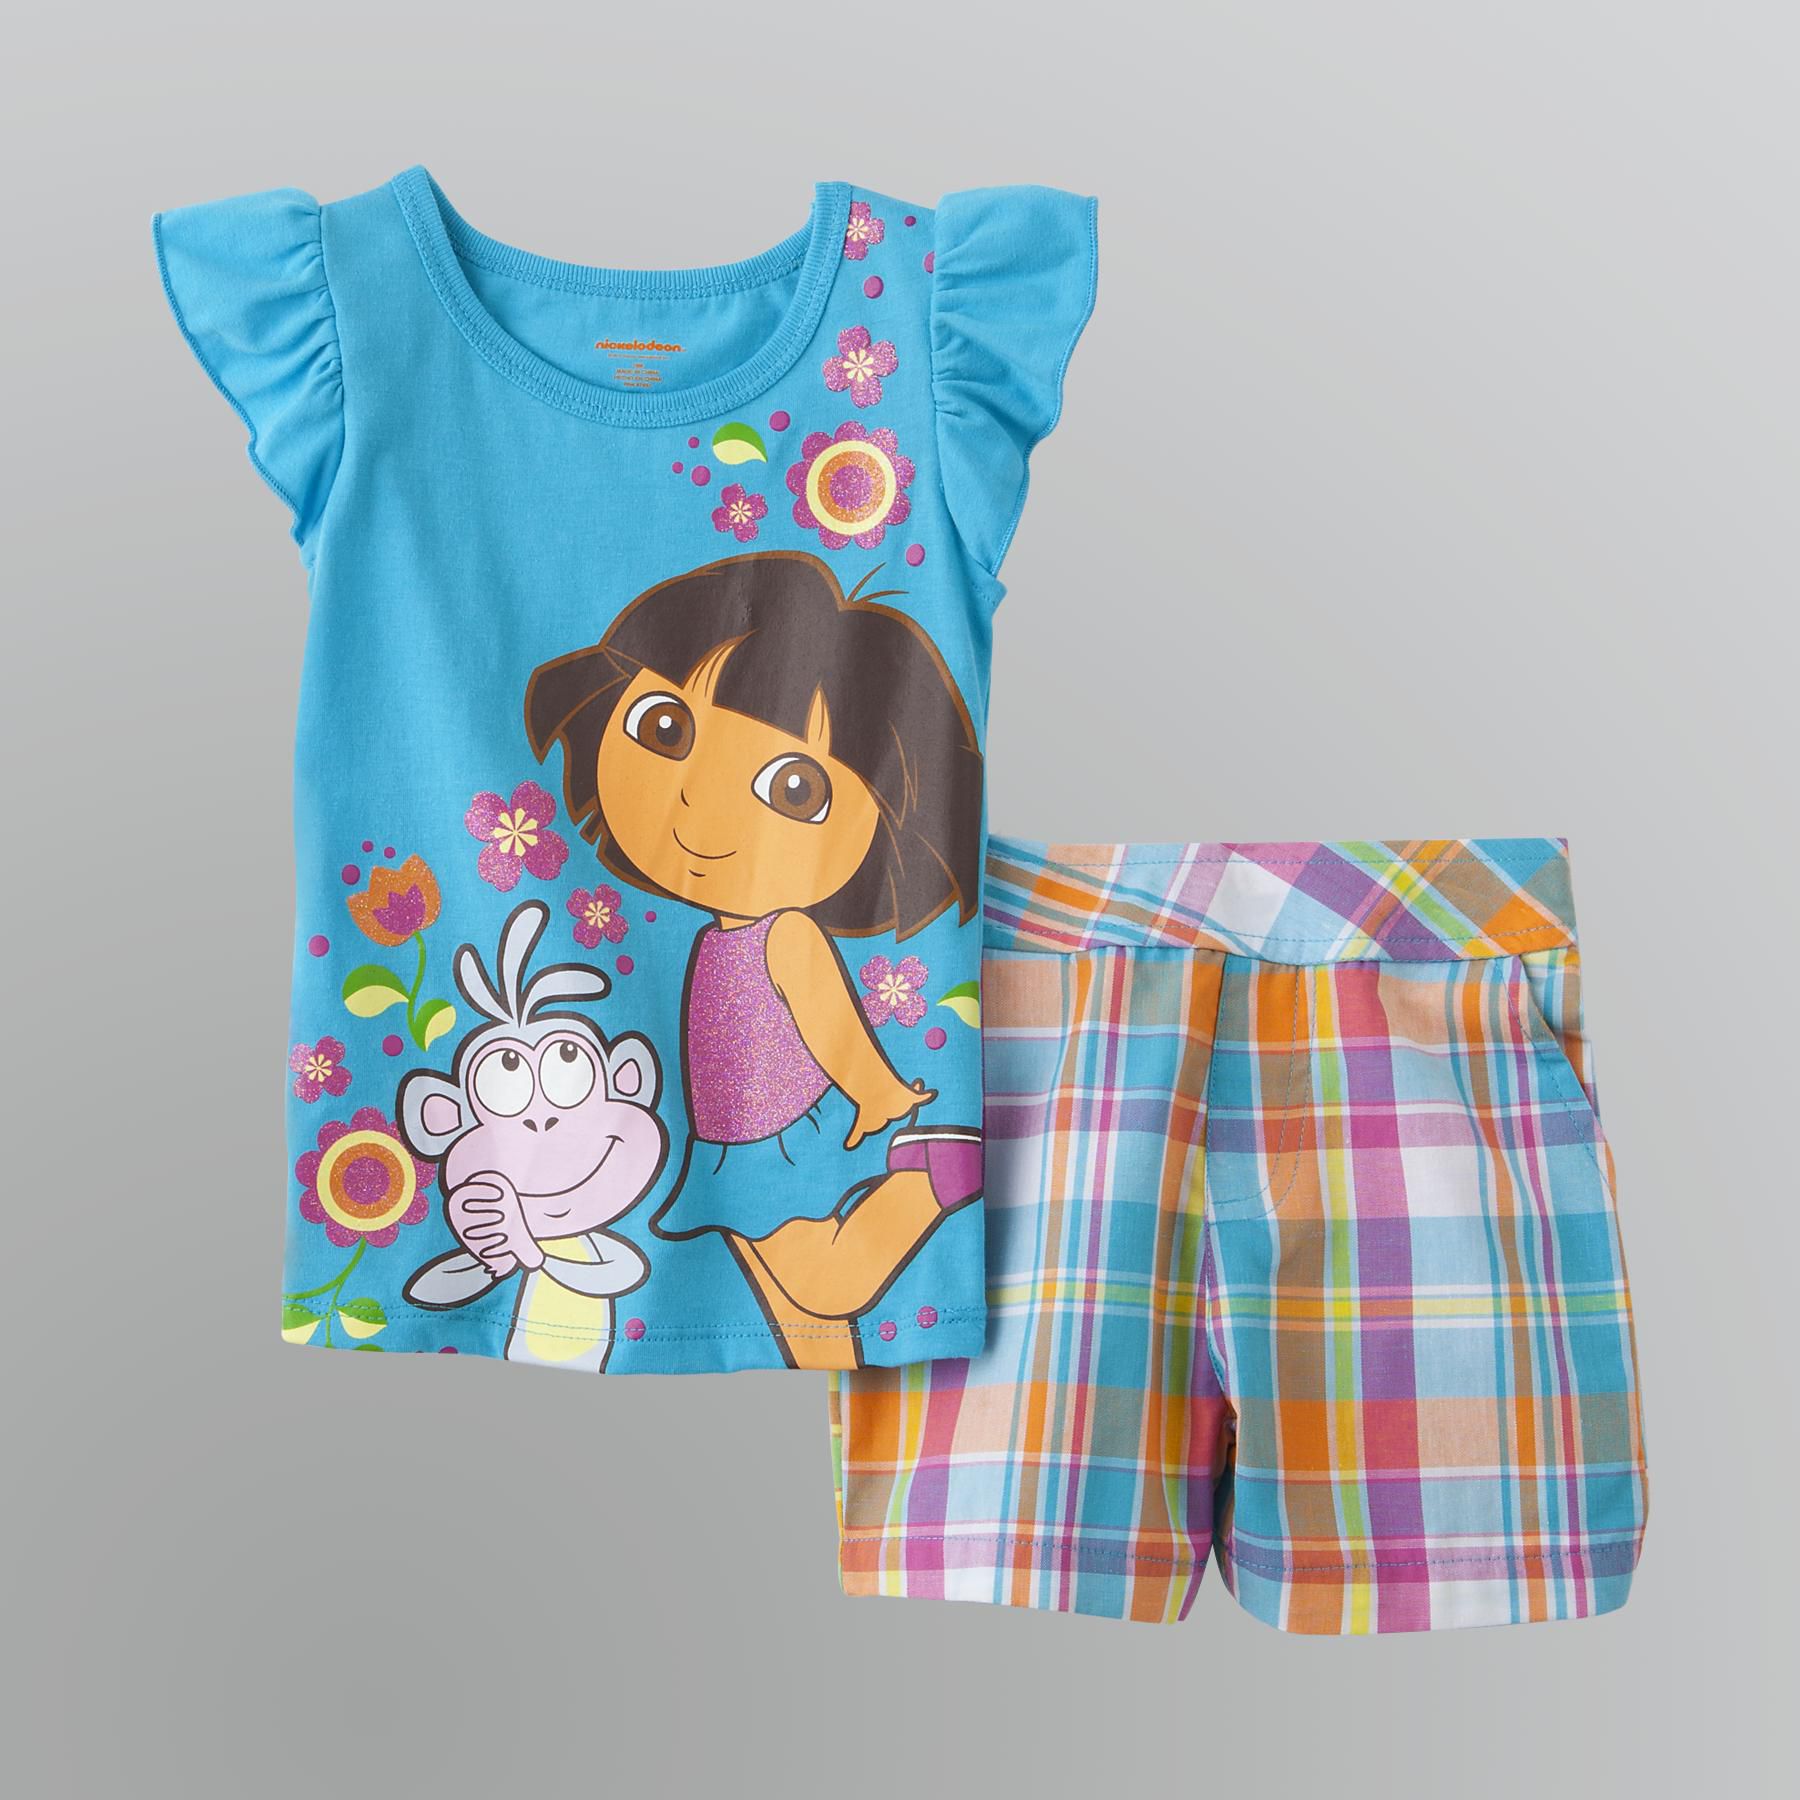 Nickelodeon Toddler Girl's Dora Plaid Shorts & Top Set